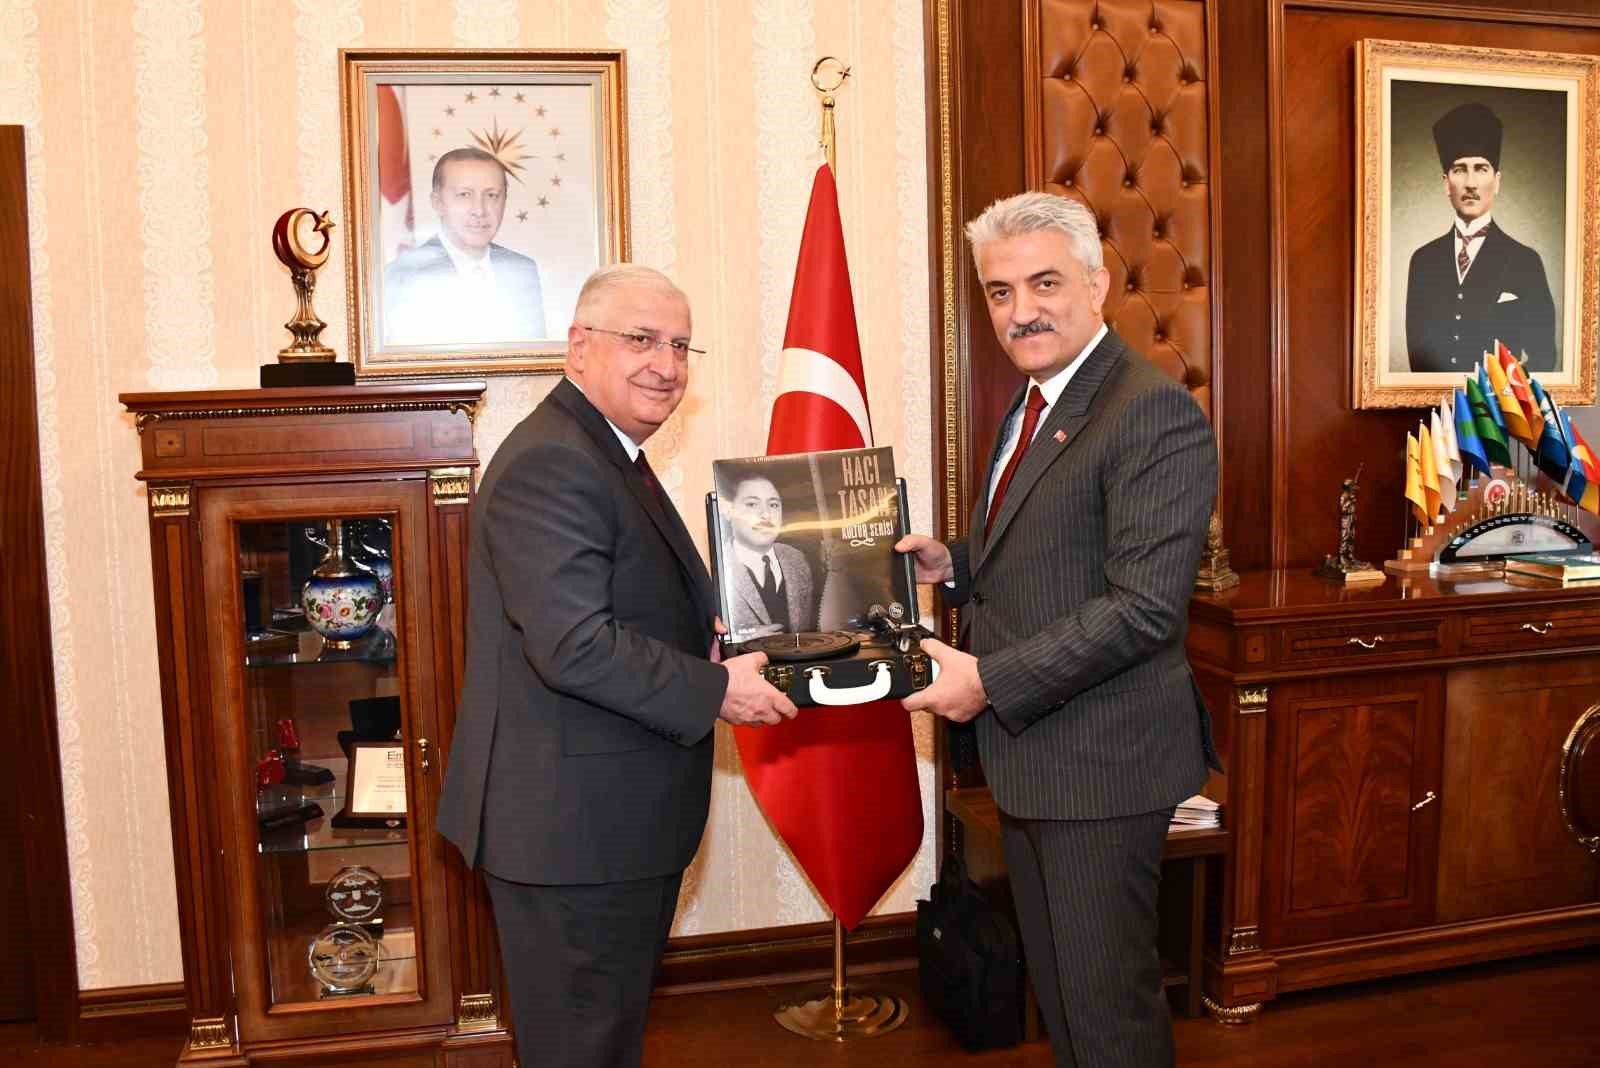 Millî Savunma Bakanı Güler, Kırıkkale Valiliği’ni ziyaret etti
